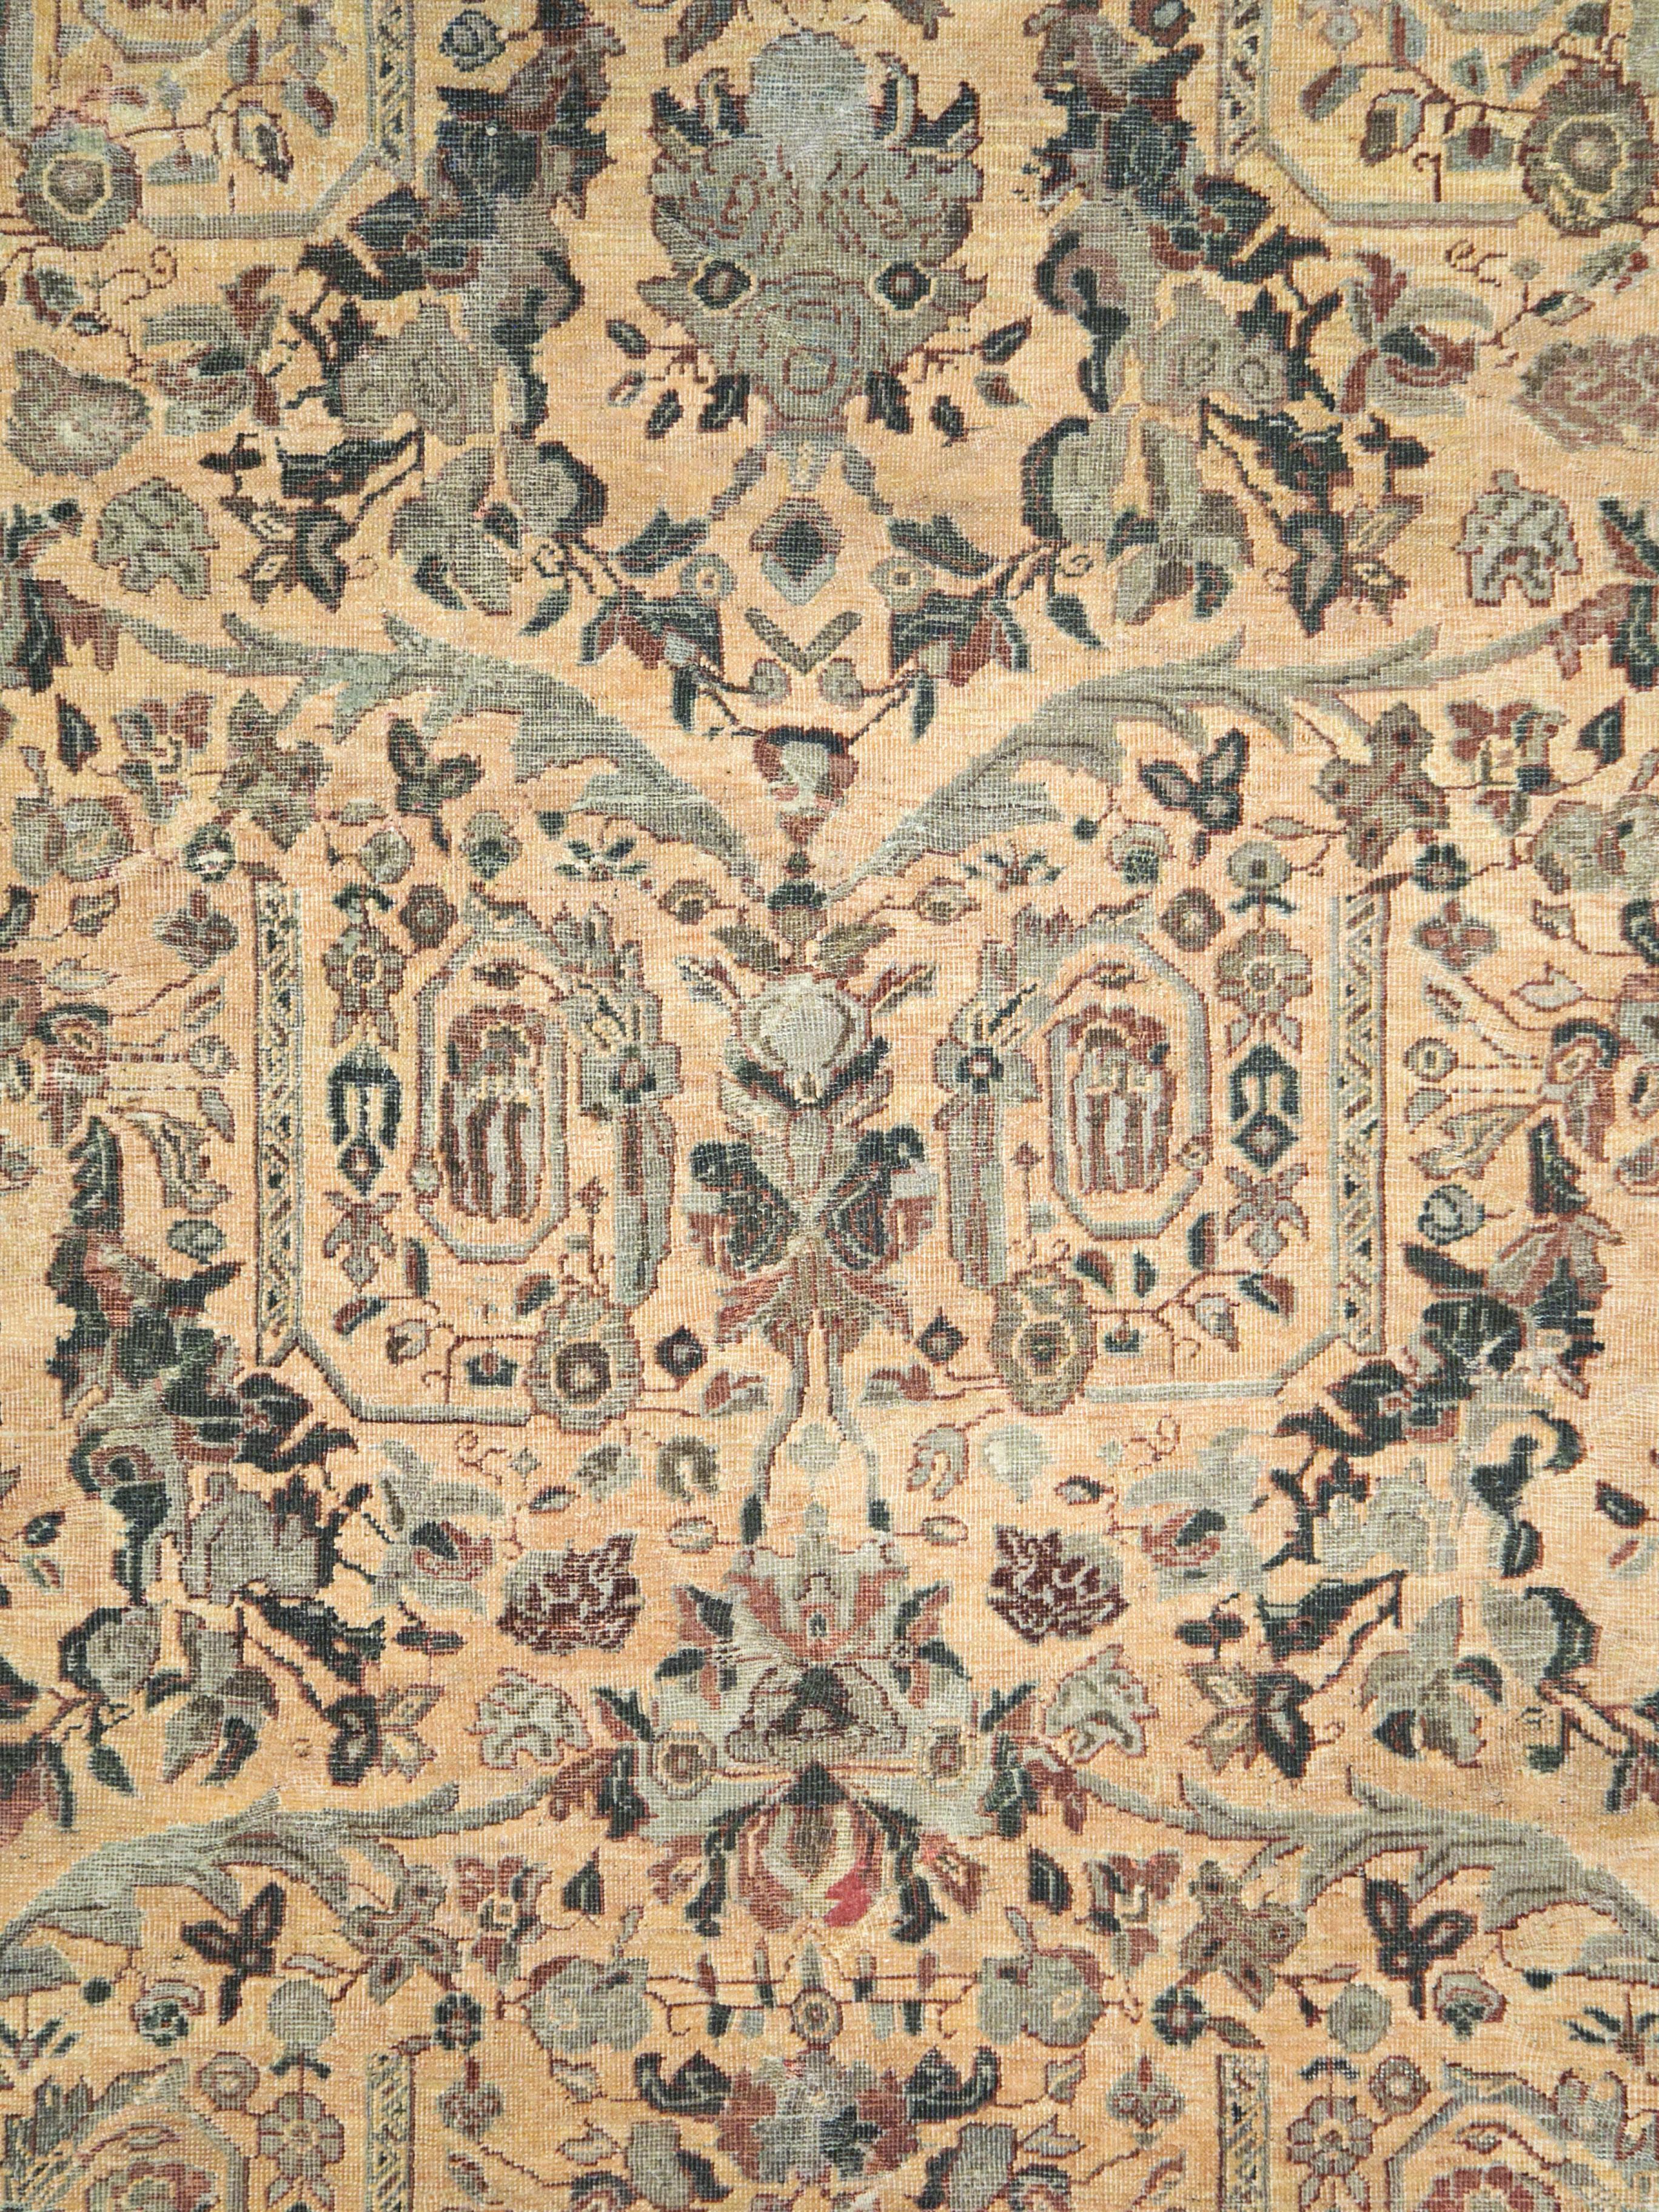 Ein antiker persischer Mahal-Teppich aus dem frühen 20. Jahrhundert mit einem Mustafi-Muster aus gewundenen Blattarabesken, gebrochenen Kränzen, Blumenbouquets im europäischen Stil und bunten, geraden Blumenfestons.